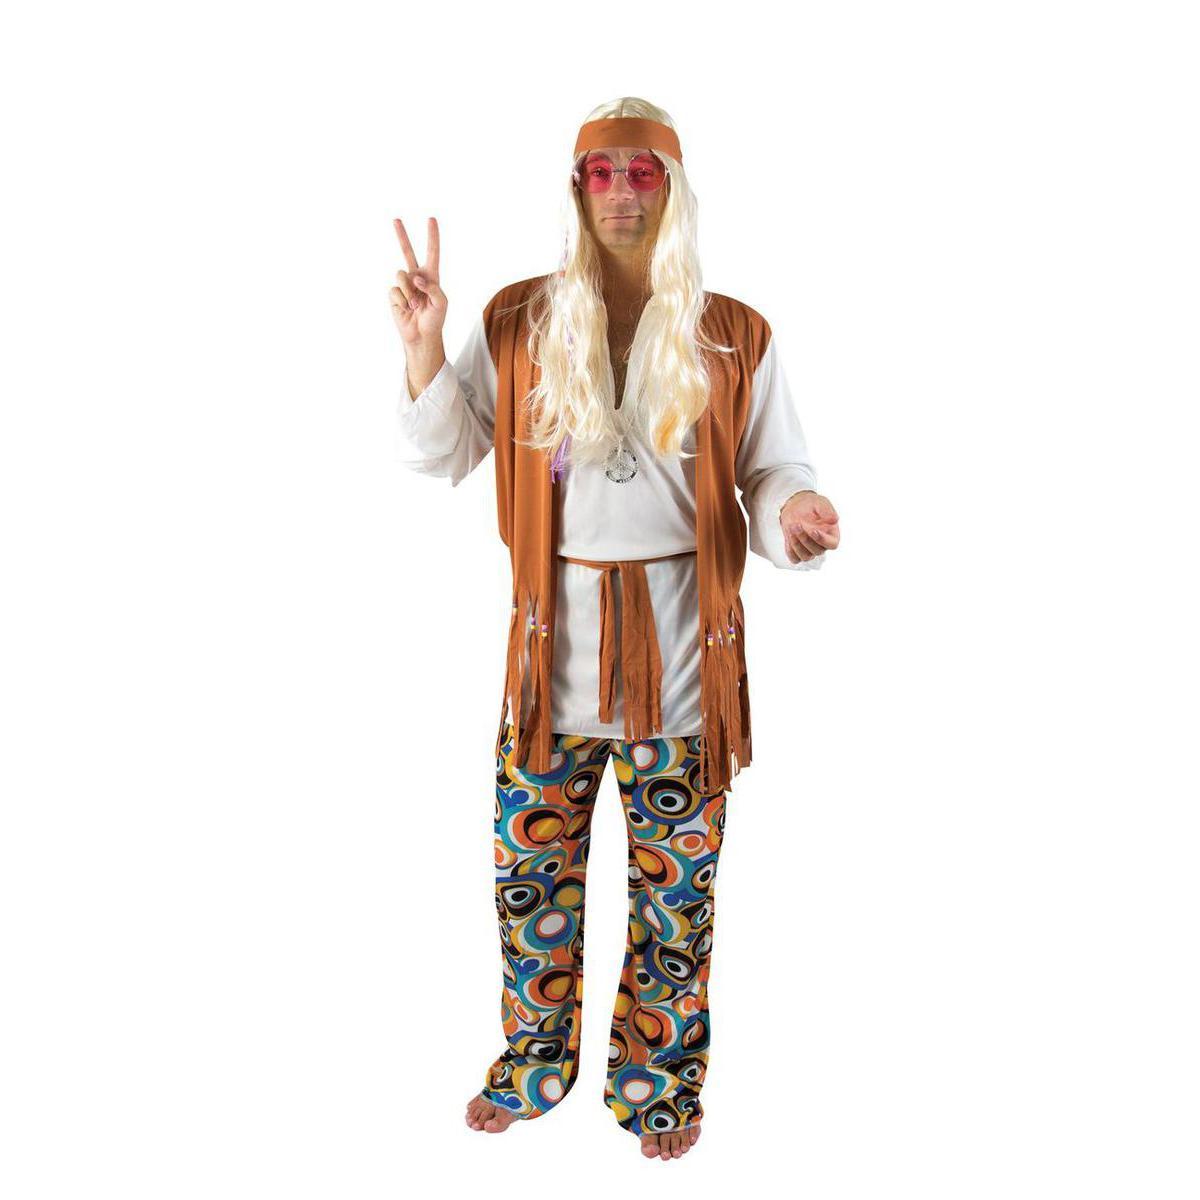 Costume adulte hippie homme en polyester - Taille unique - Noir